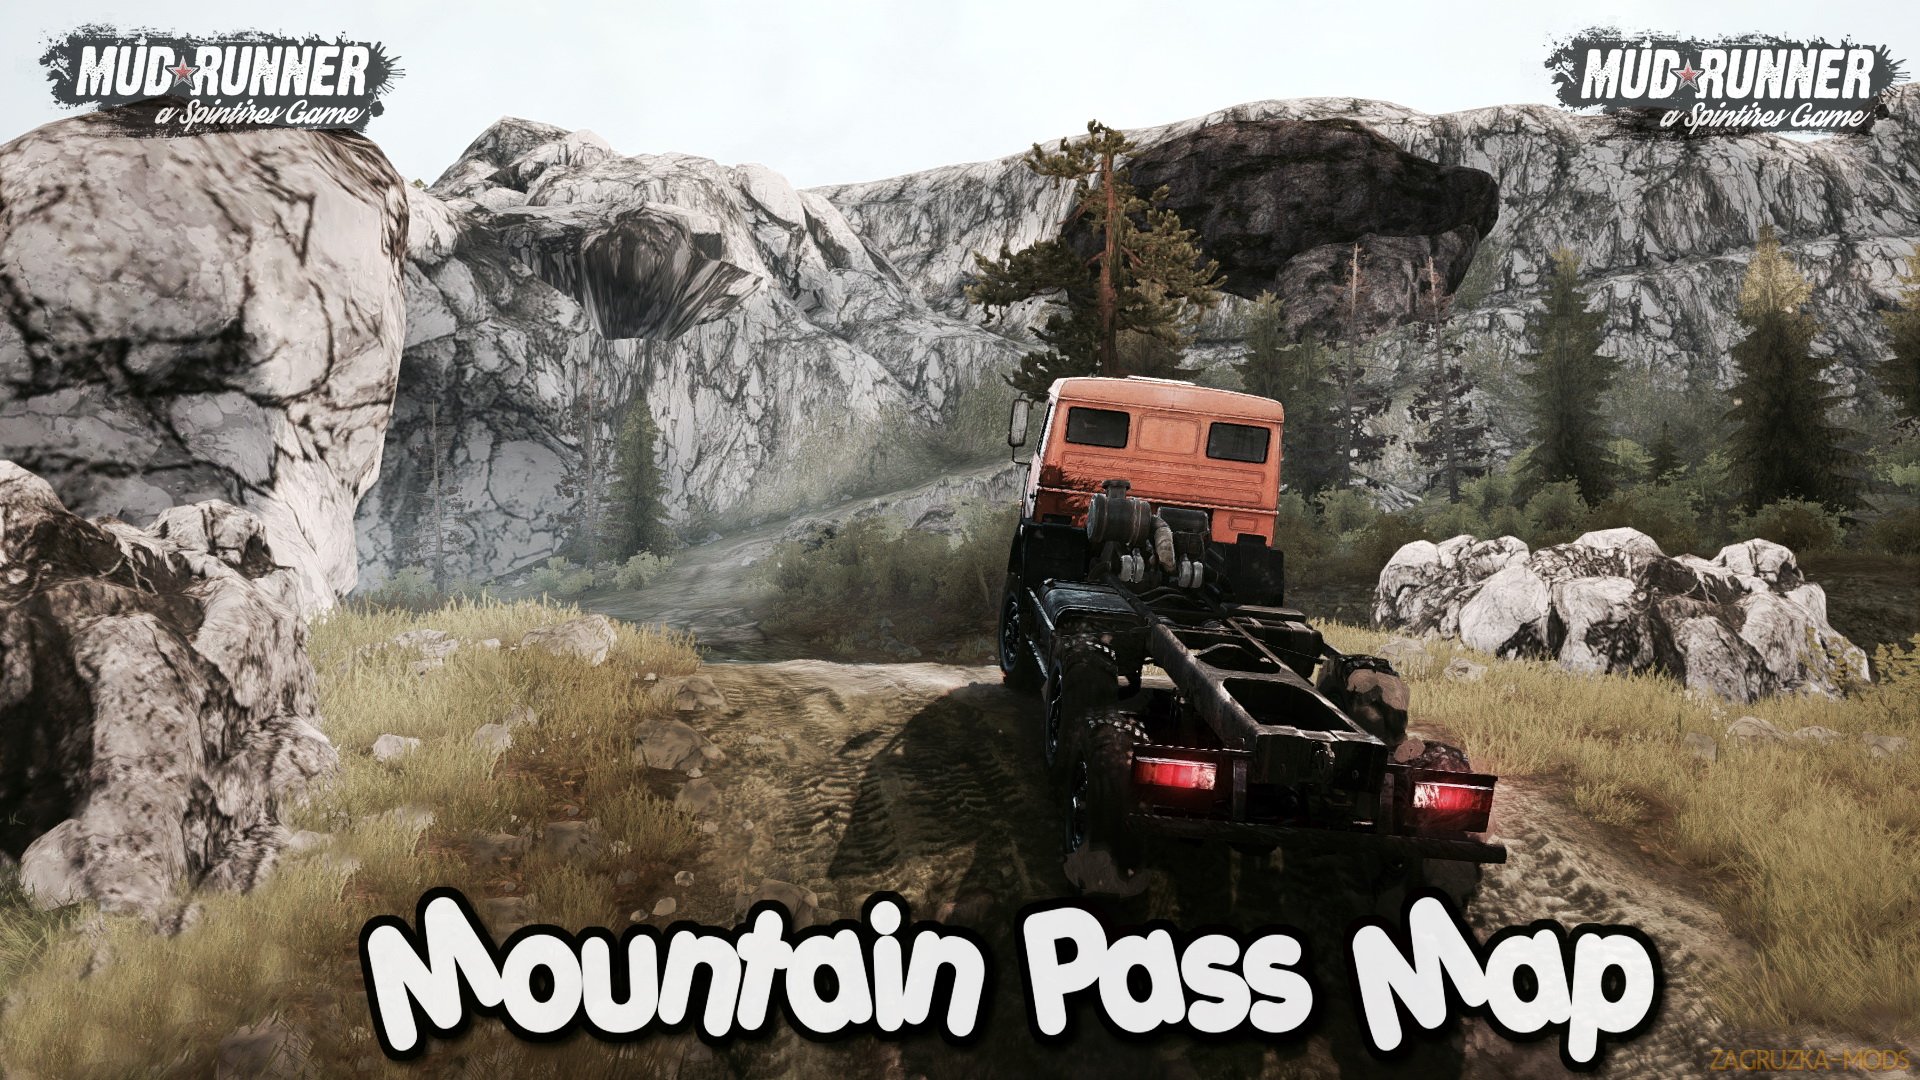 Mountain Pass Map 2018 v1.0 (v11.12.17) for SpinTires Mudrunner